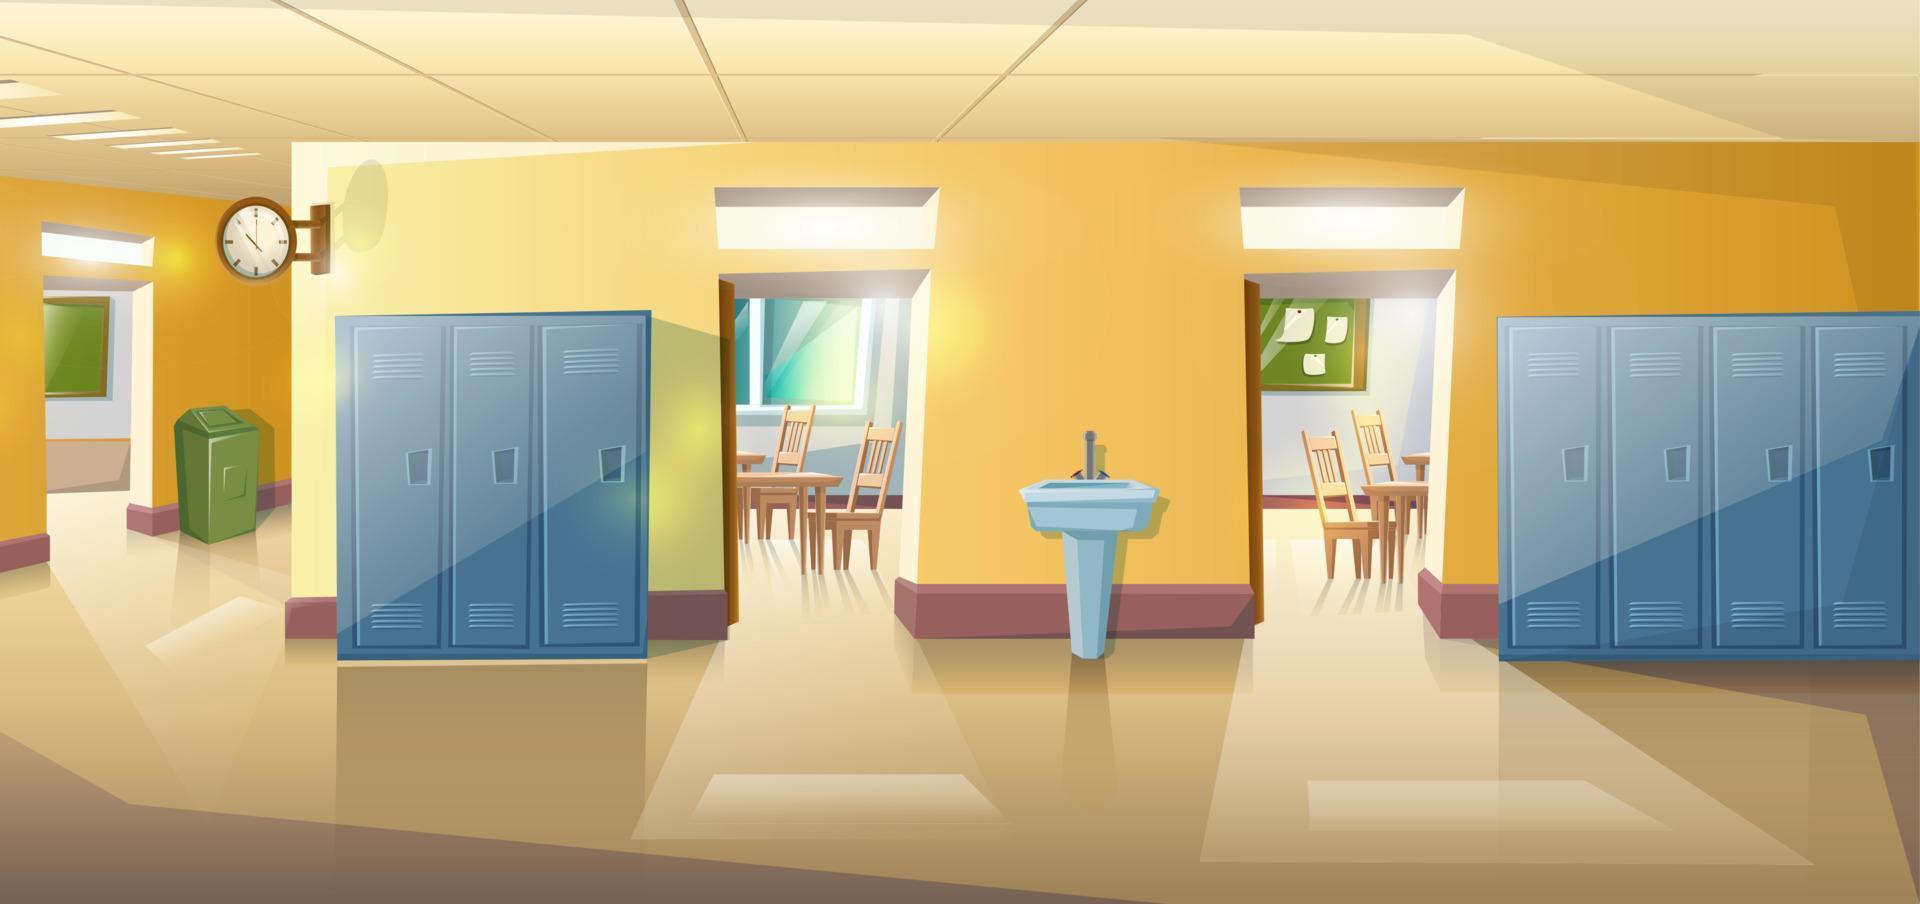 estilo de dibujos animados vectoriales vacío sin alumnos pasillo de la escuela con puertas y reloj en la pared. vector